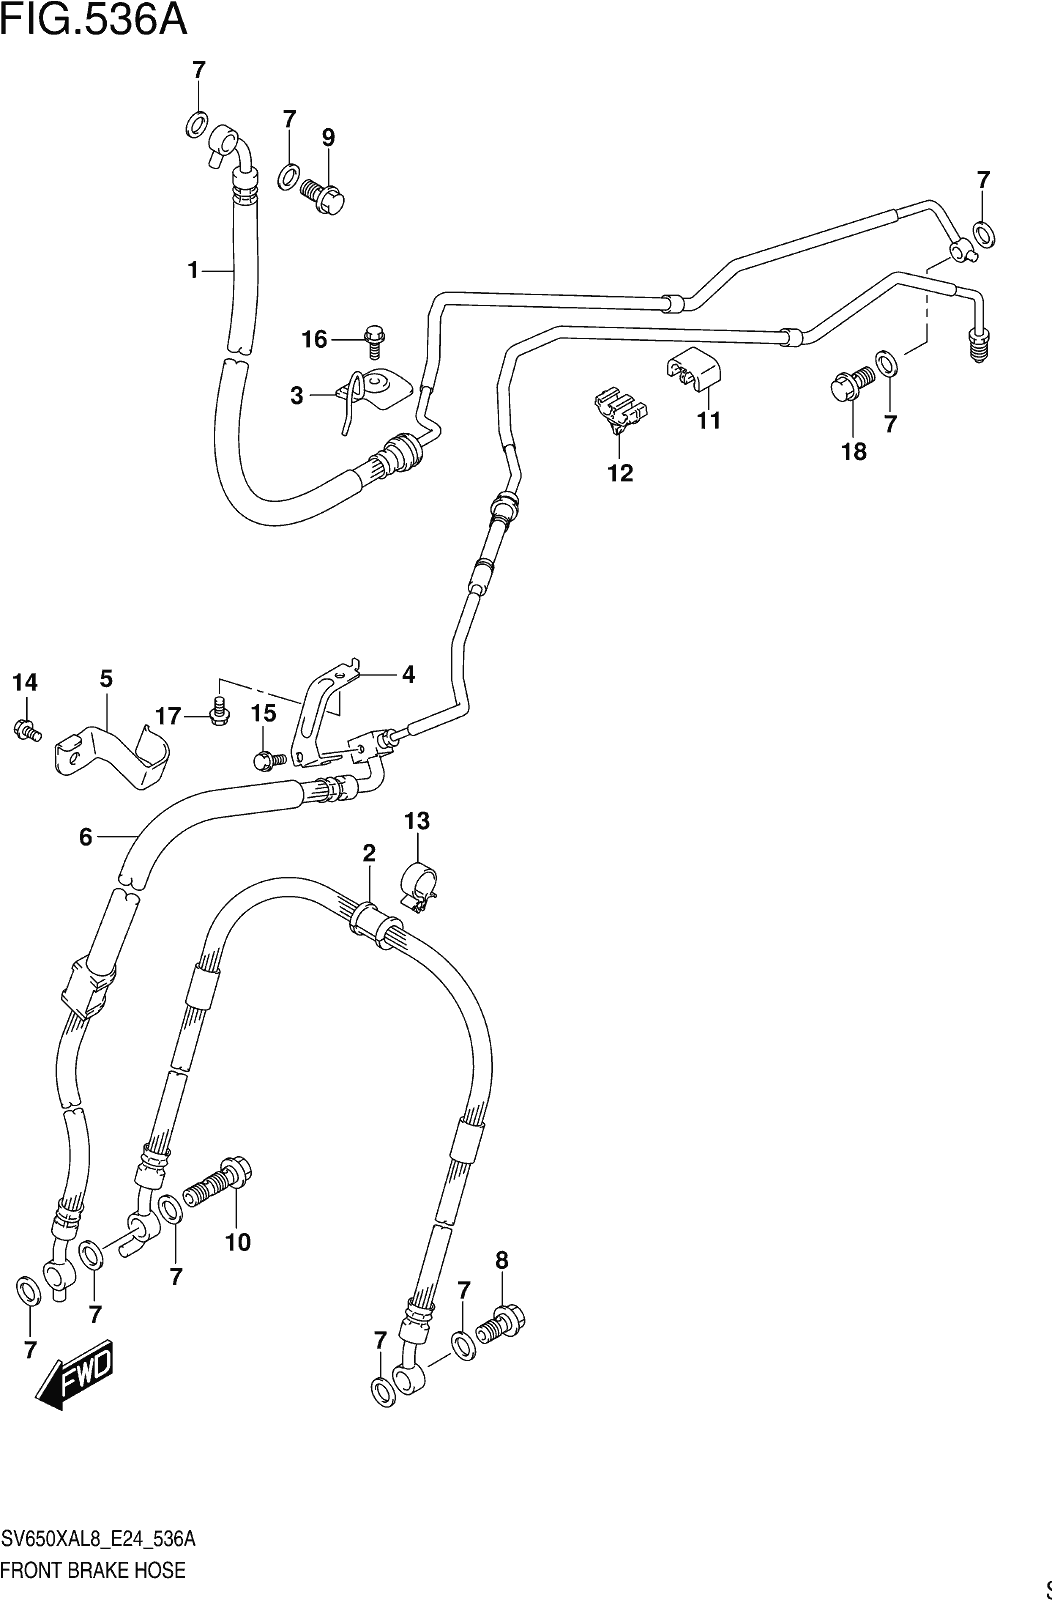 Fig.536a Front Brake Hose